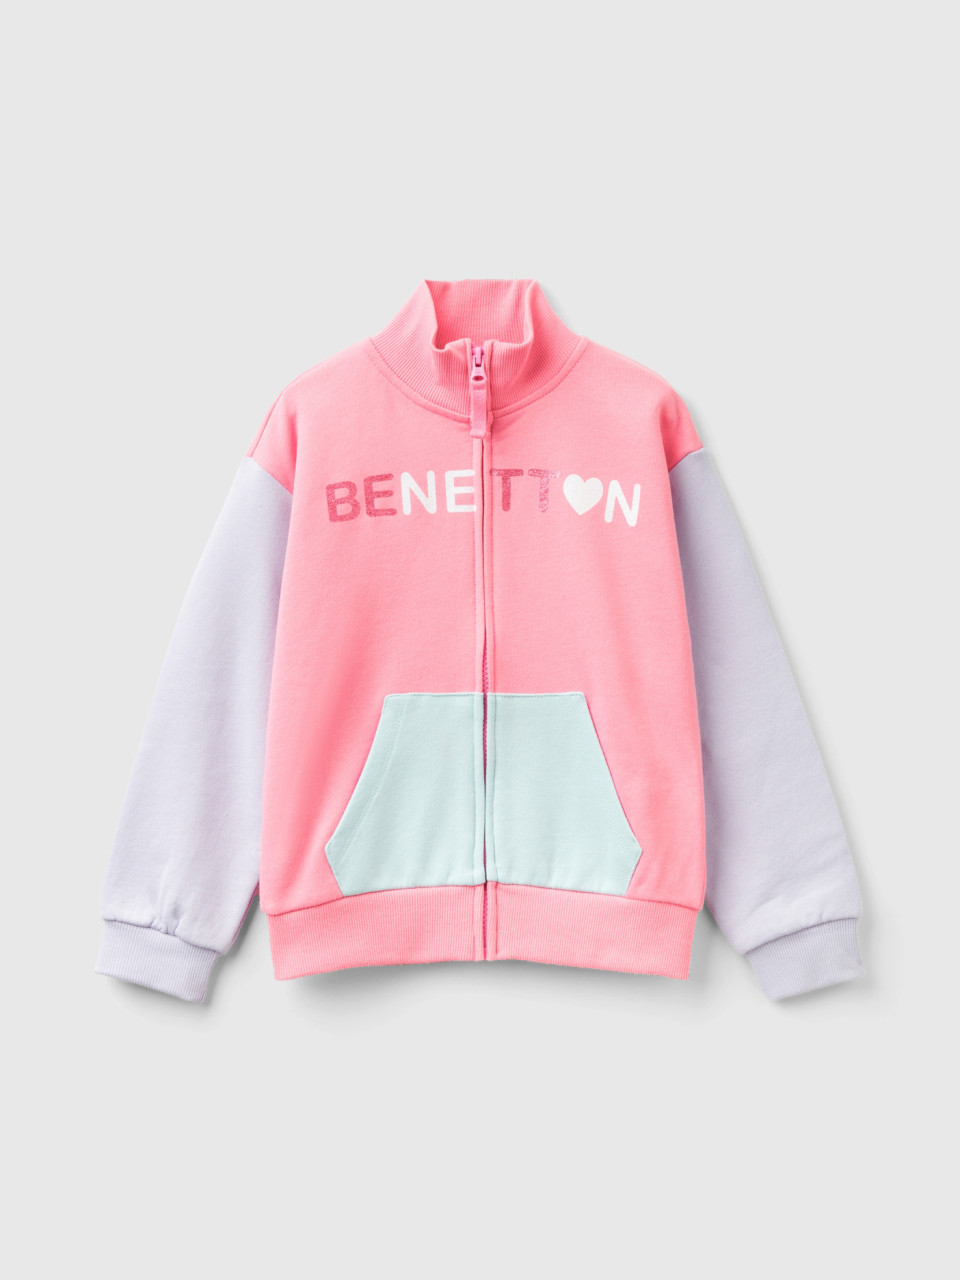 Benetton, Sweatshirt With Zip And Collar, Pink, Kids